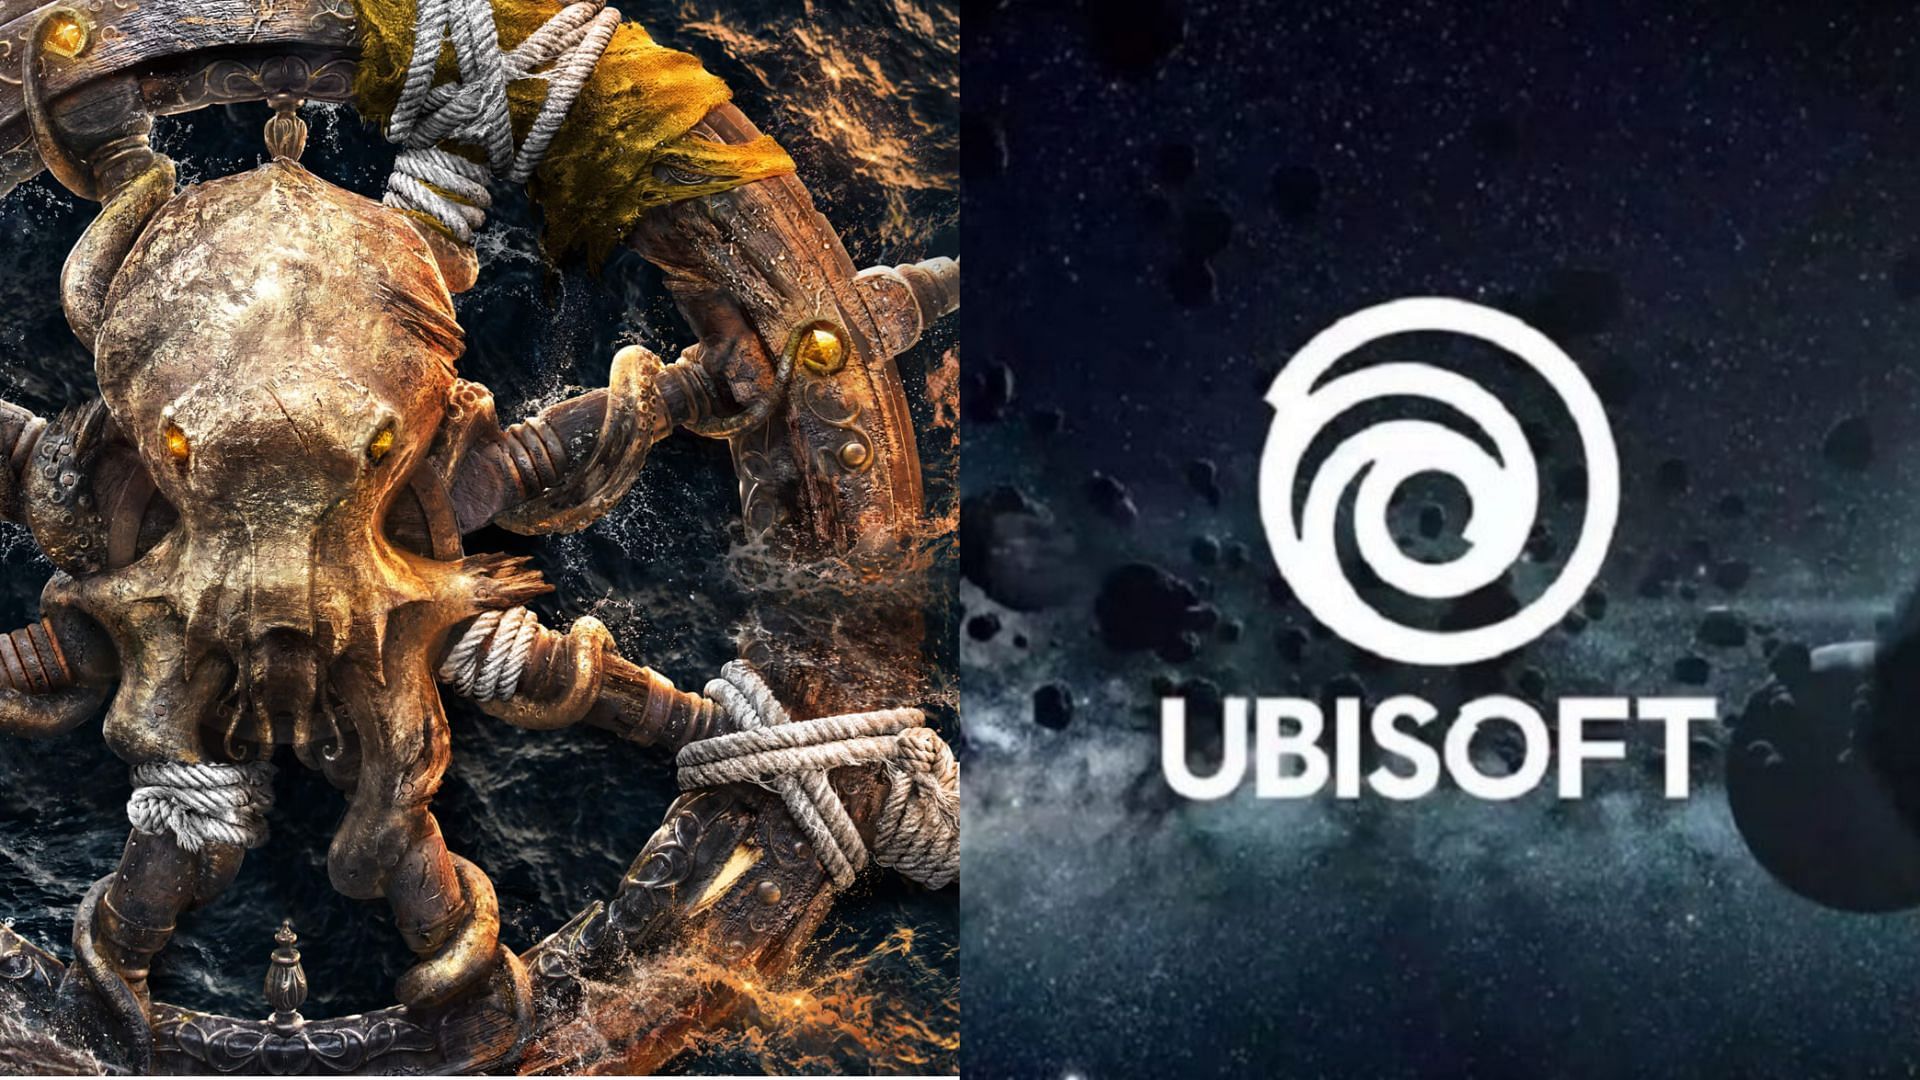 Ubisoft's Skull and Bones gets new 2024 release window